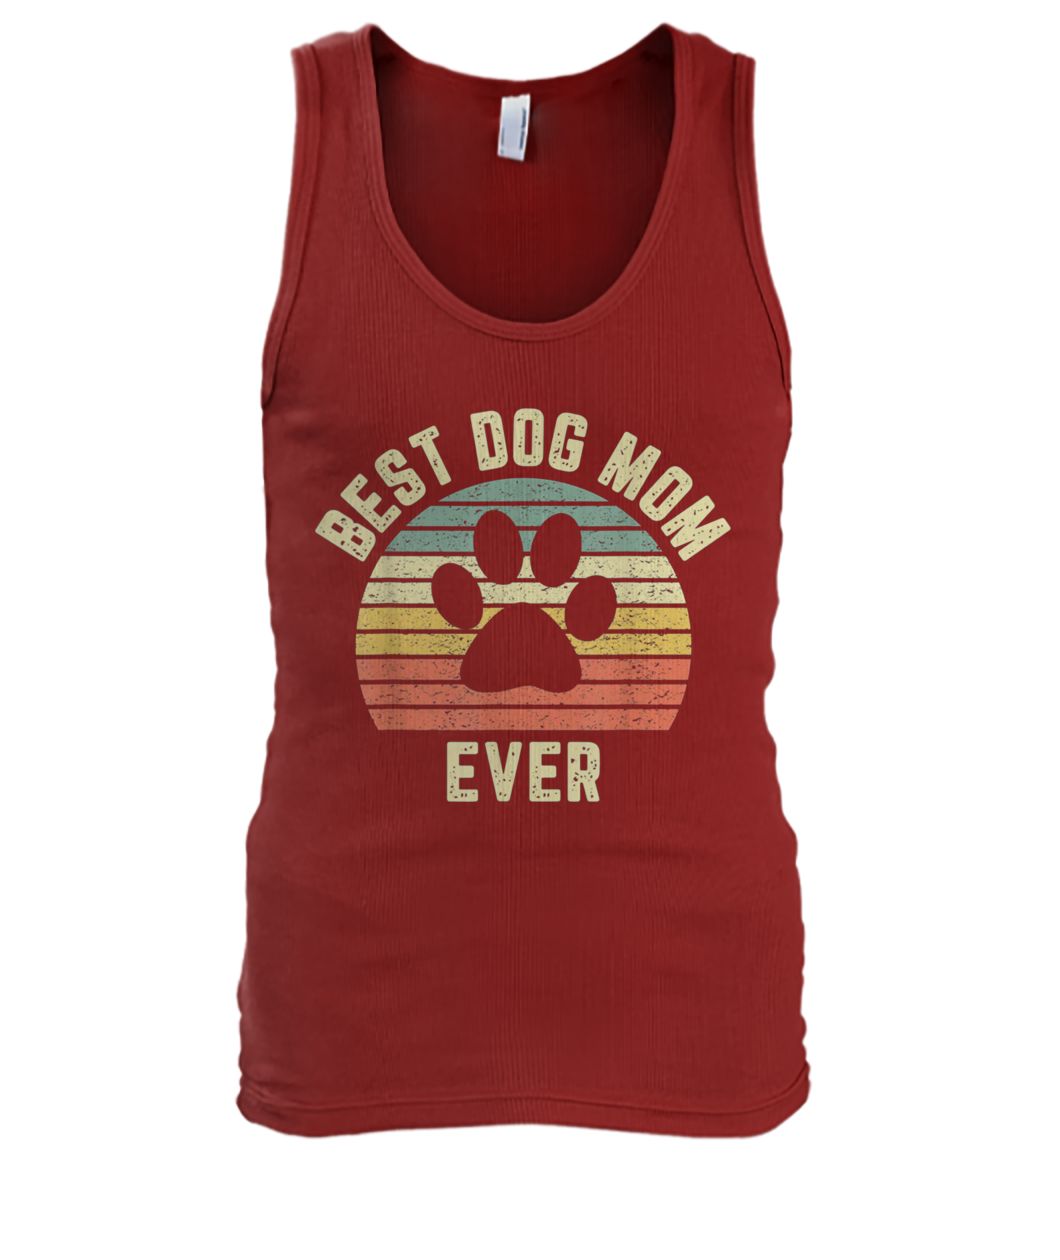 Vintage best dog mom ever men's tank top